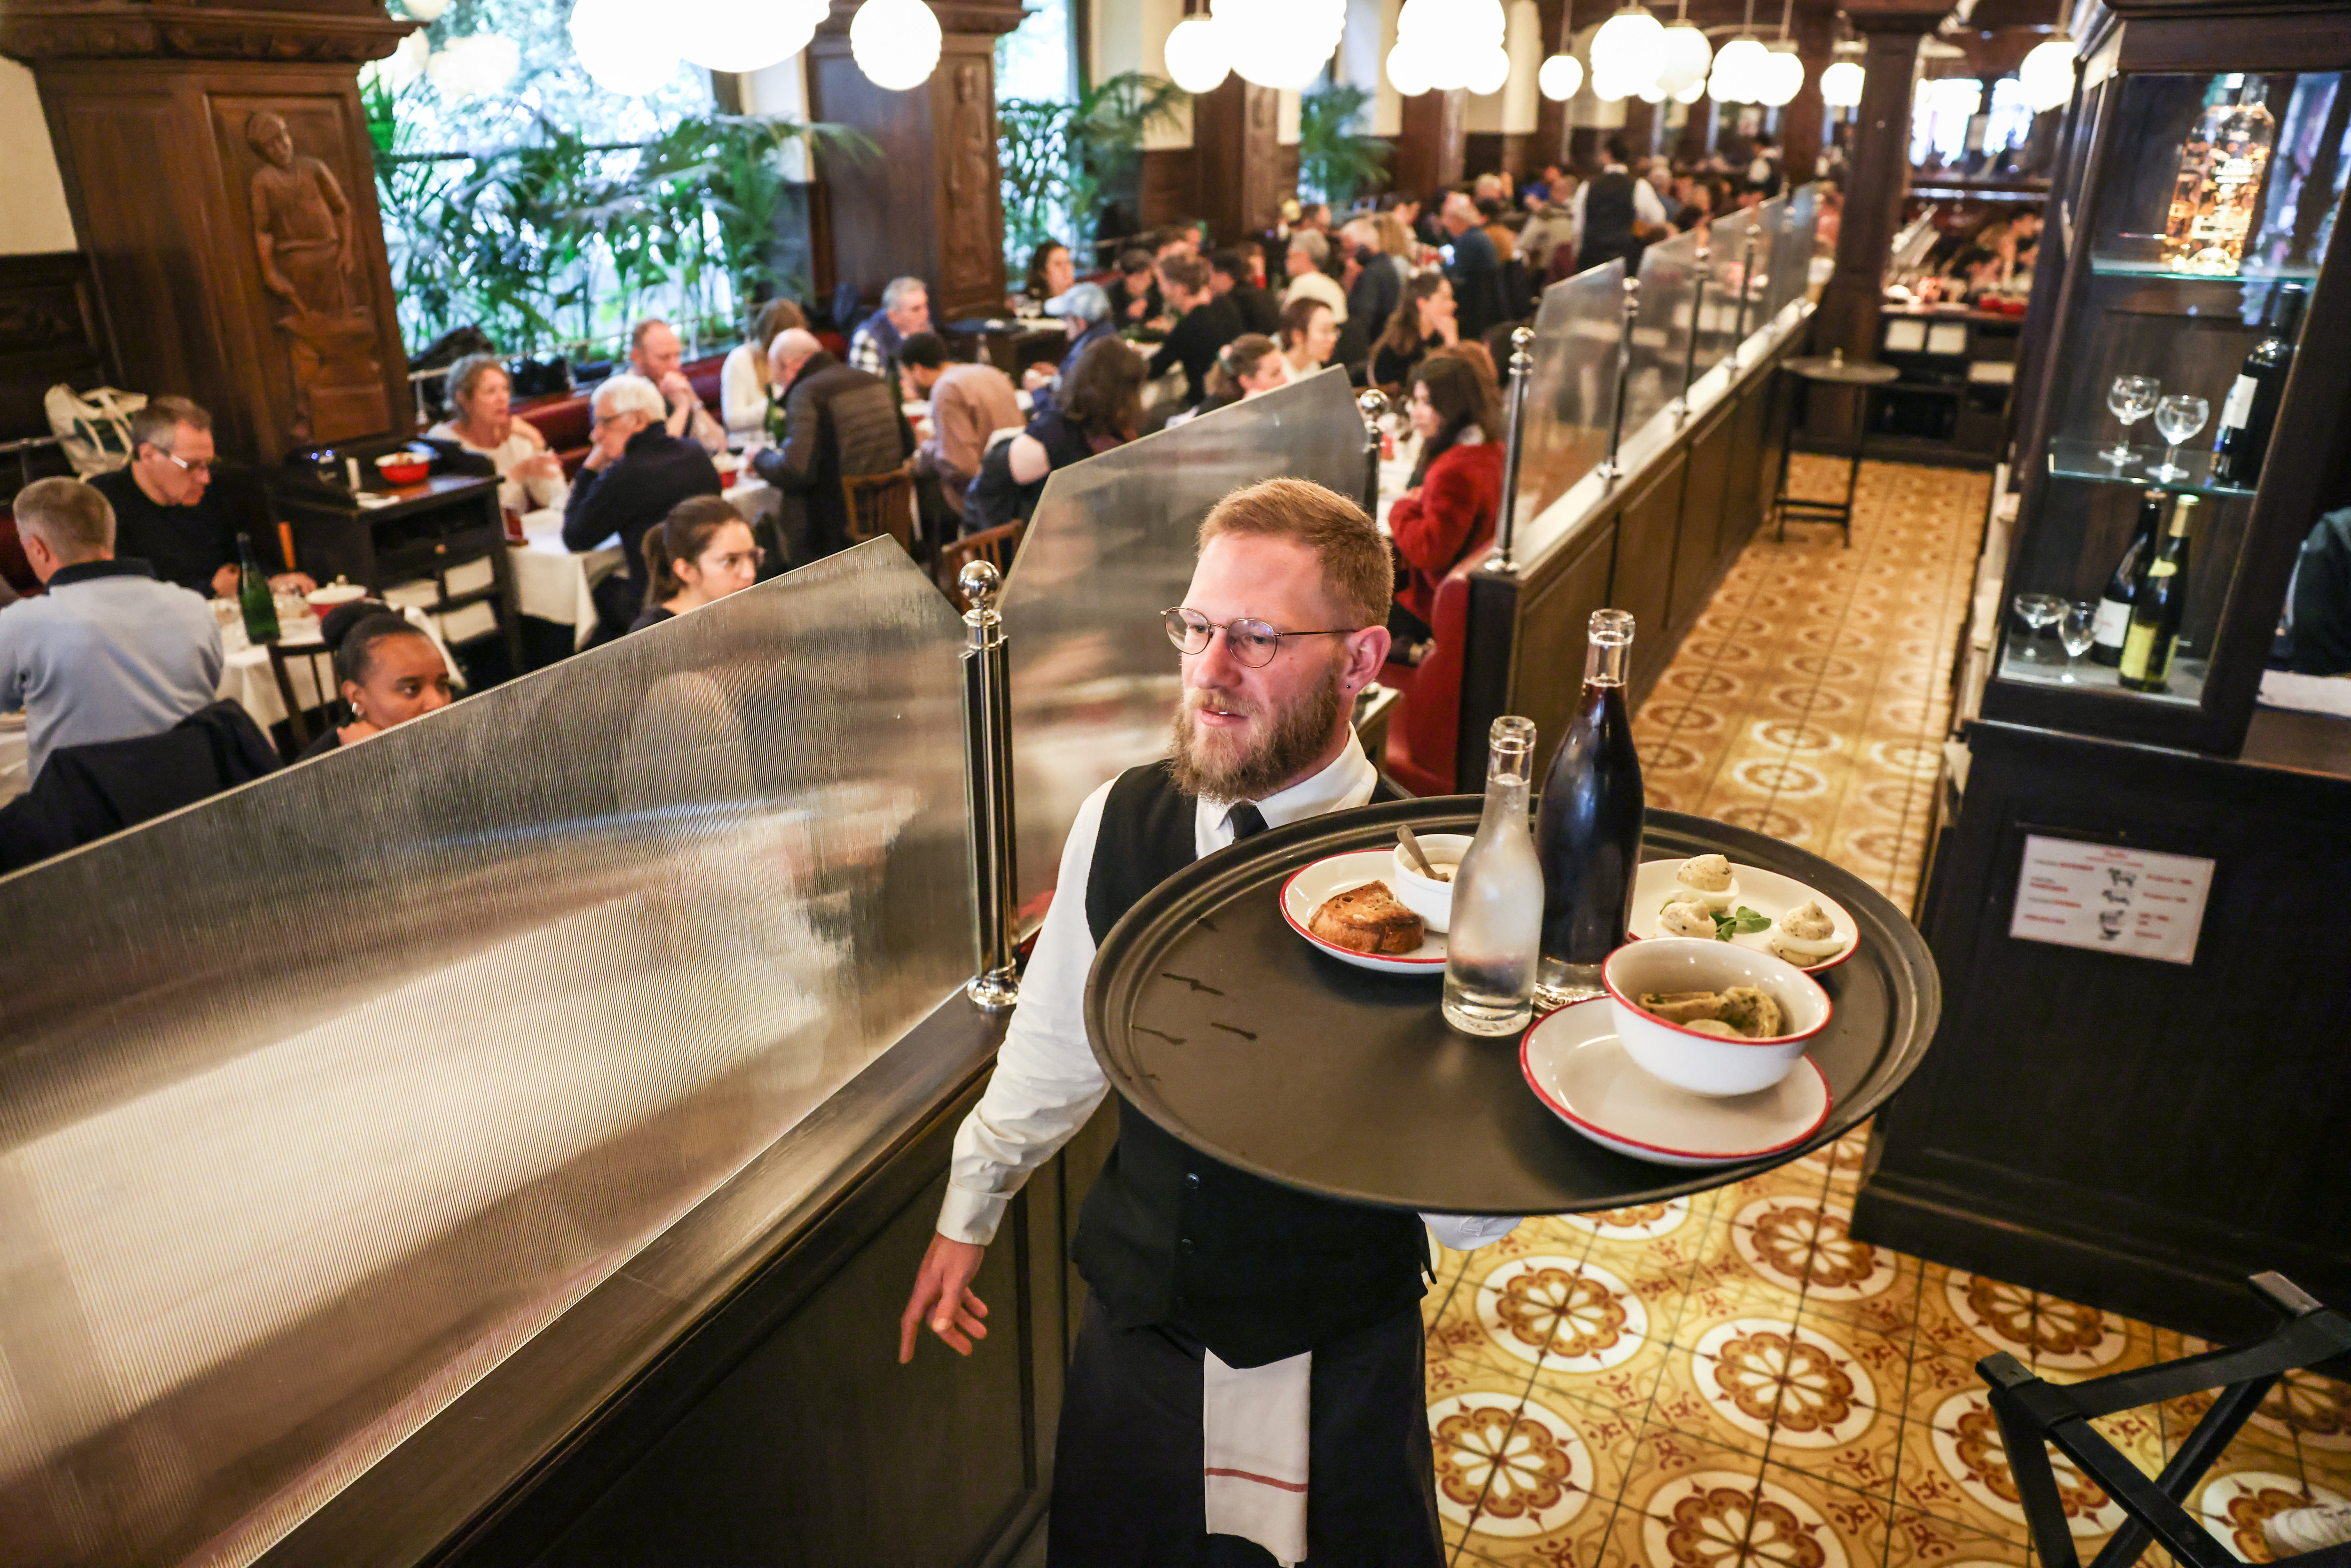 Serveurs de cafés, de restaurants et commis font partie des métiers les plus souvent associés à des difficultés de recrutement à Paris selon Pôle emploi. (Illustration) LP/Fred Dugit